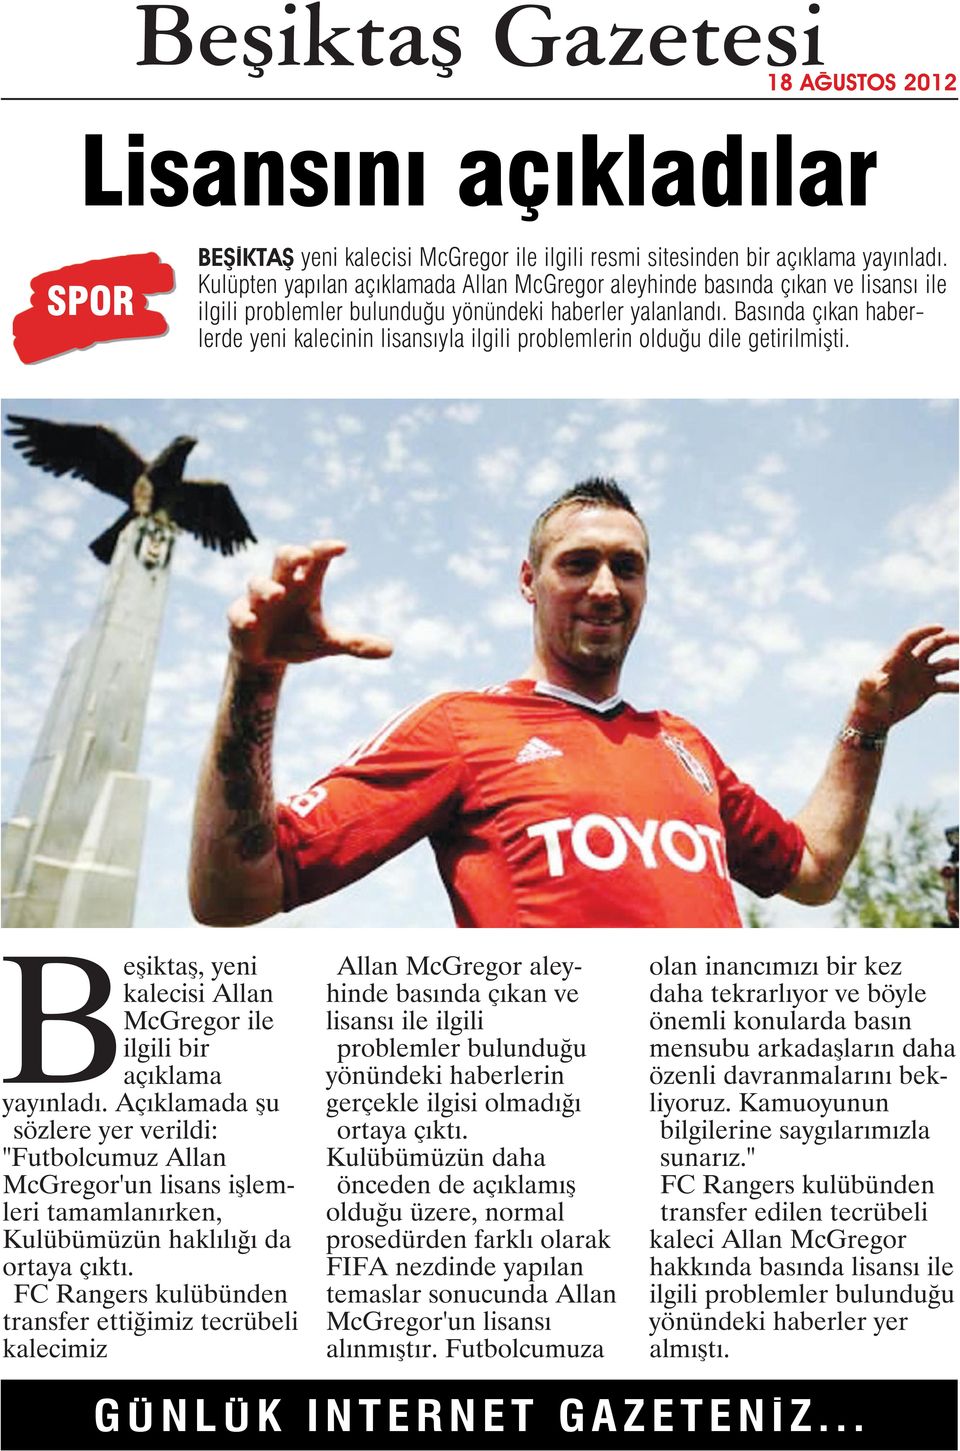 Basında çıkan haberlerde yeni kalecinin lisansıyla ilgili problemlerin olduğu dile getirilmişti. Beşiktaş, yeni kalecisi Allan McGregor ile ilgili bir açıklama yayınladı.